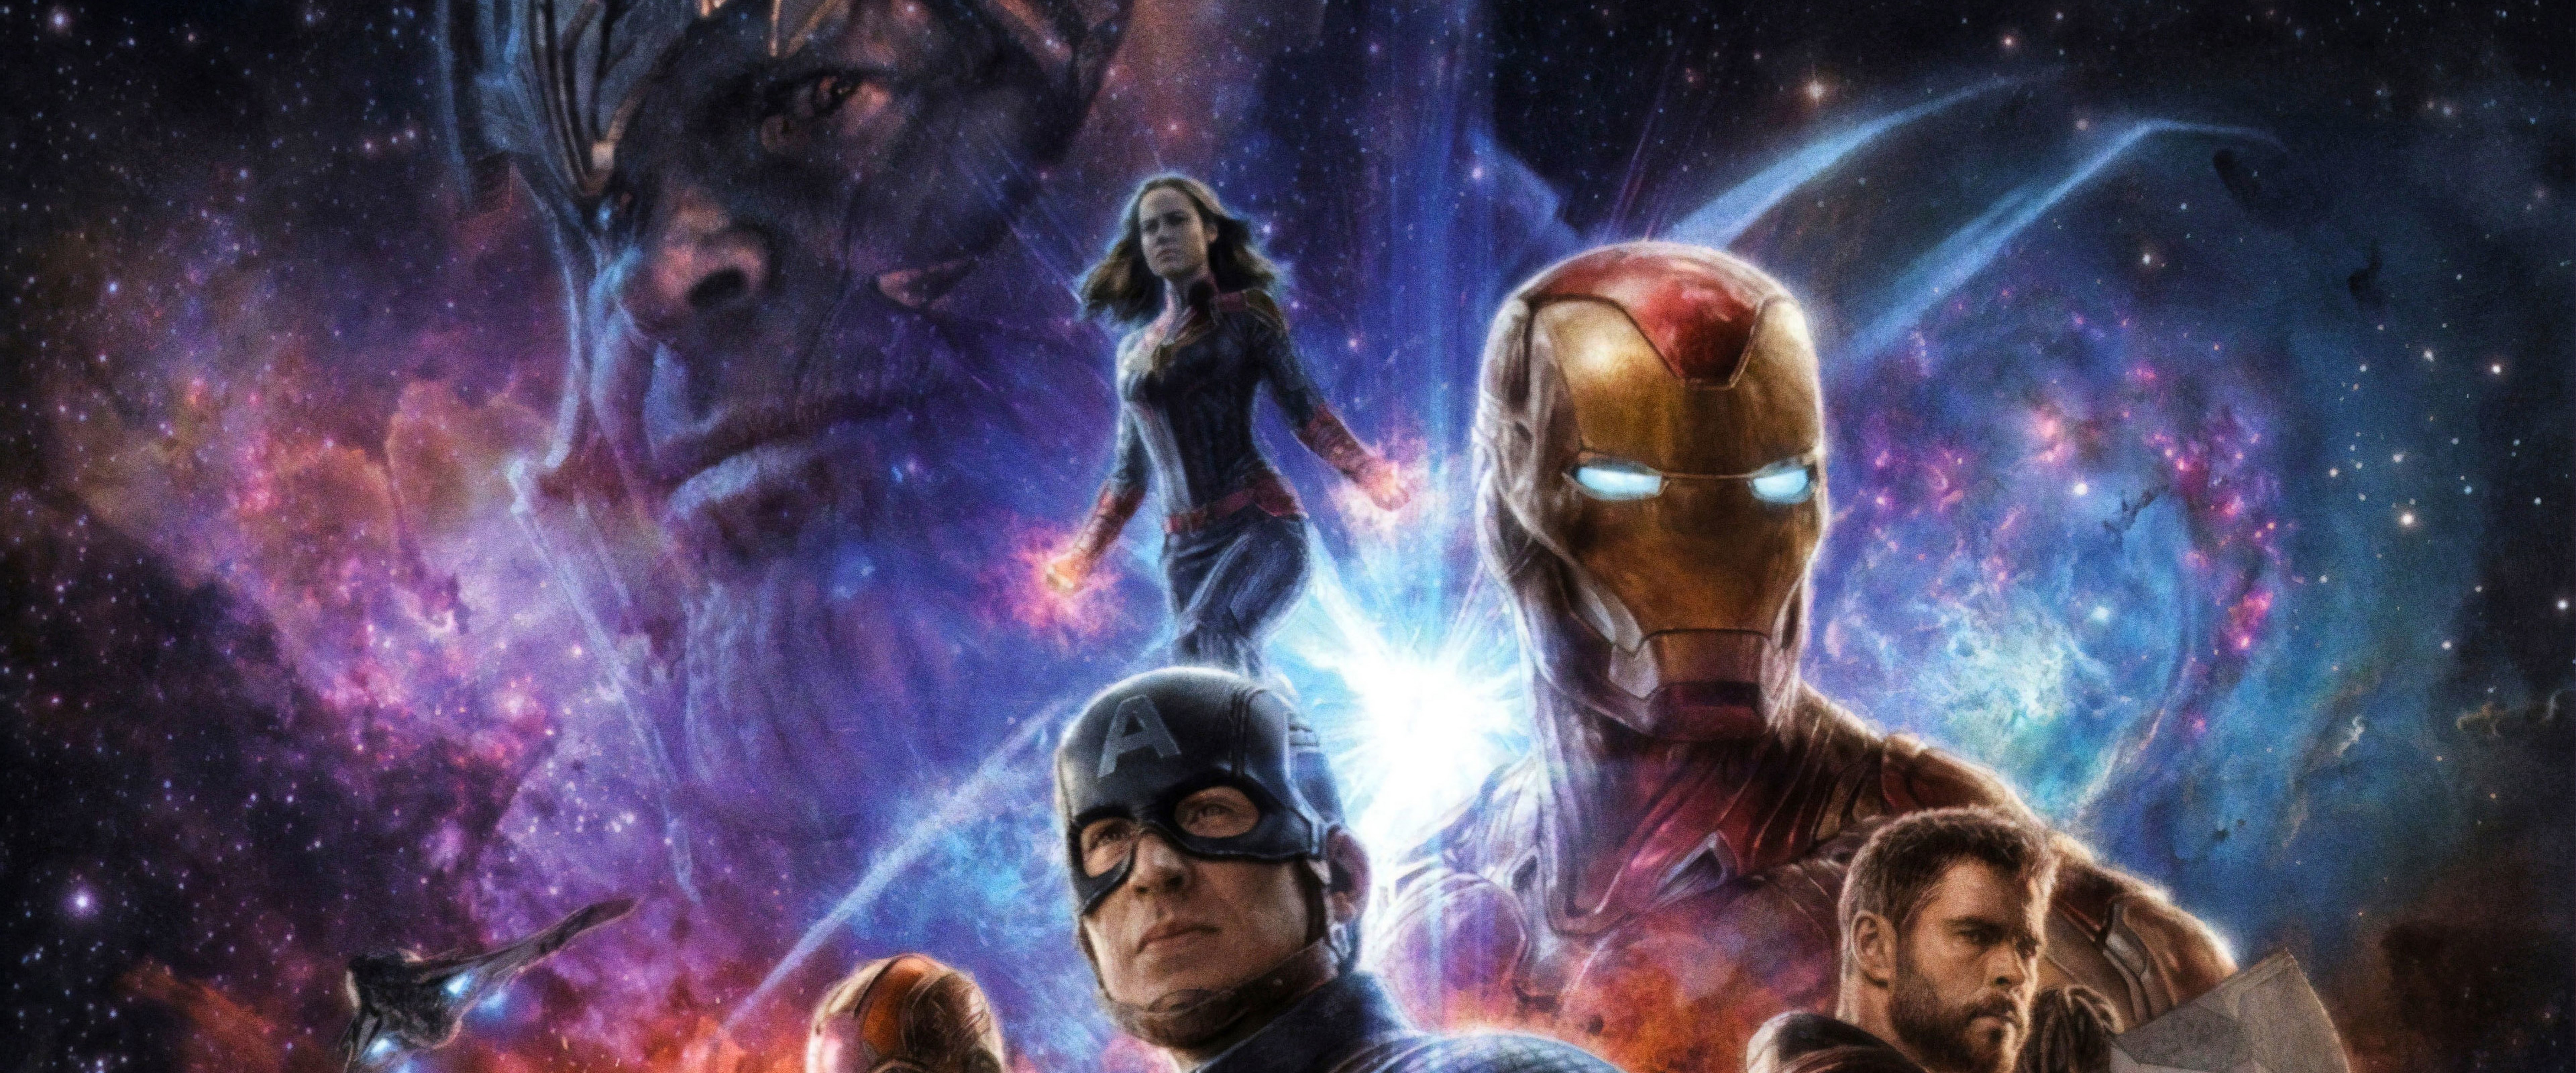 Avengers: Endgame Thanos Captain Marvel PC DeskK Wallpaper free Download